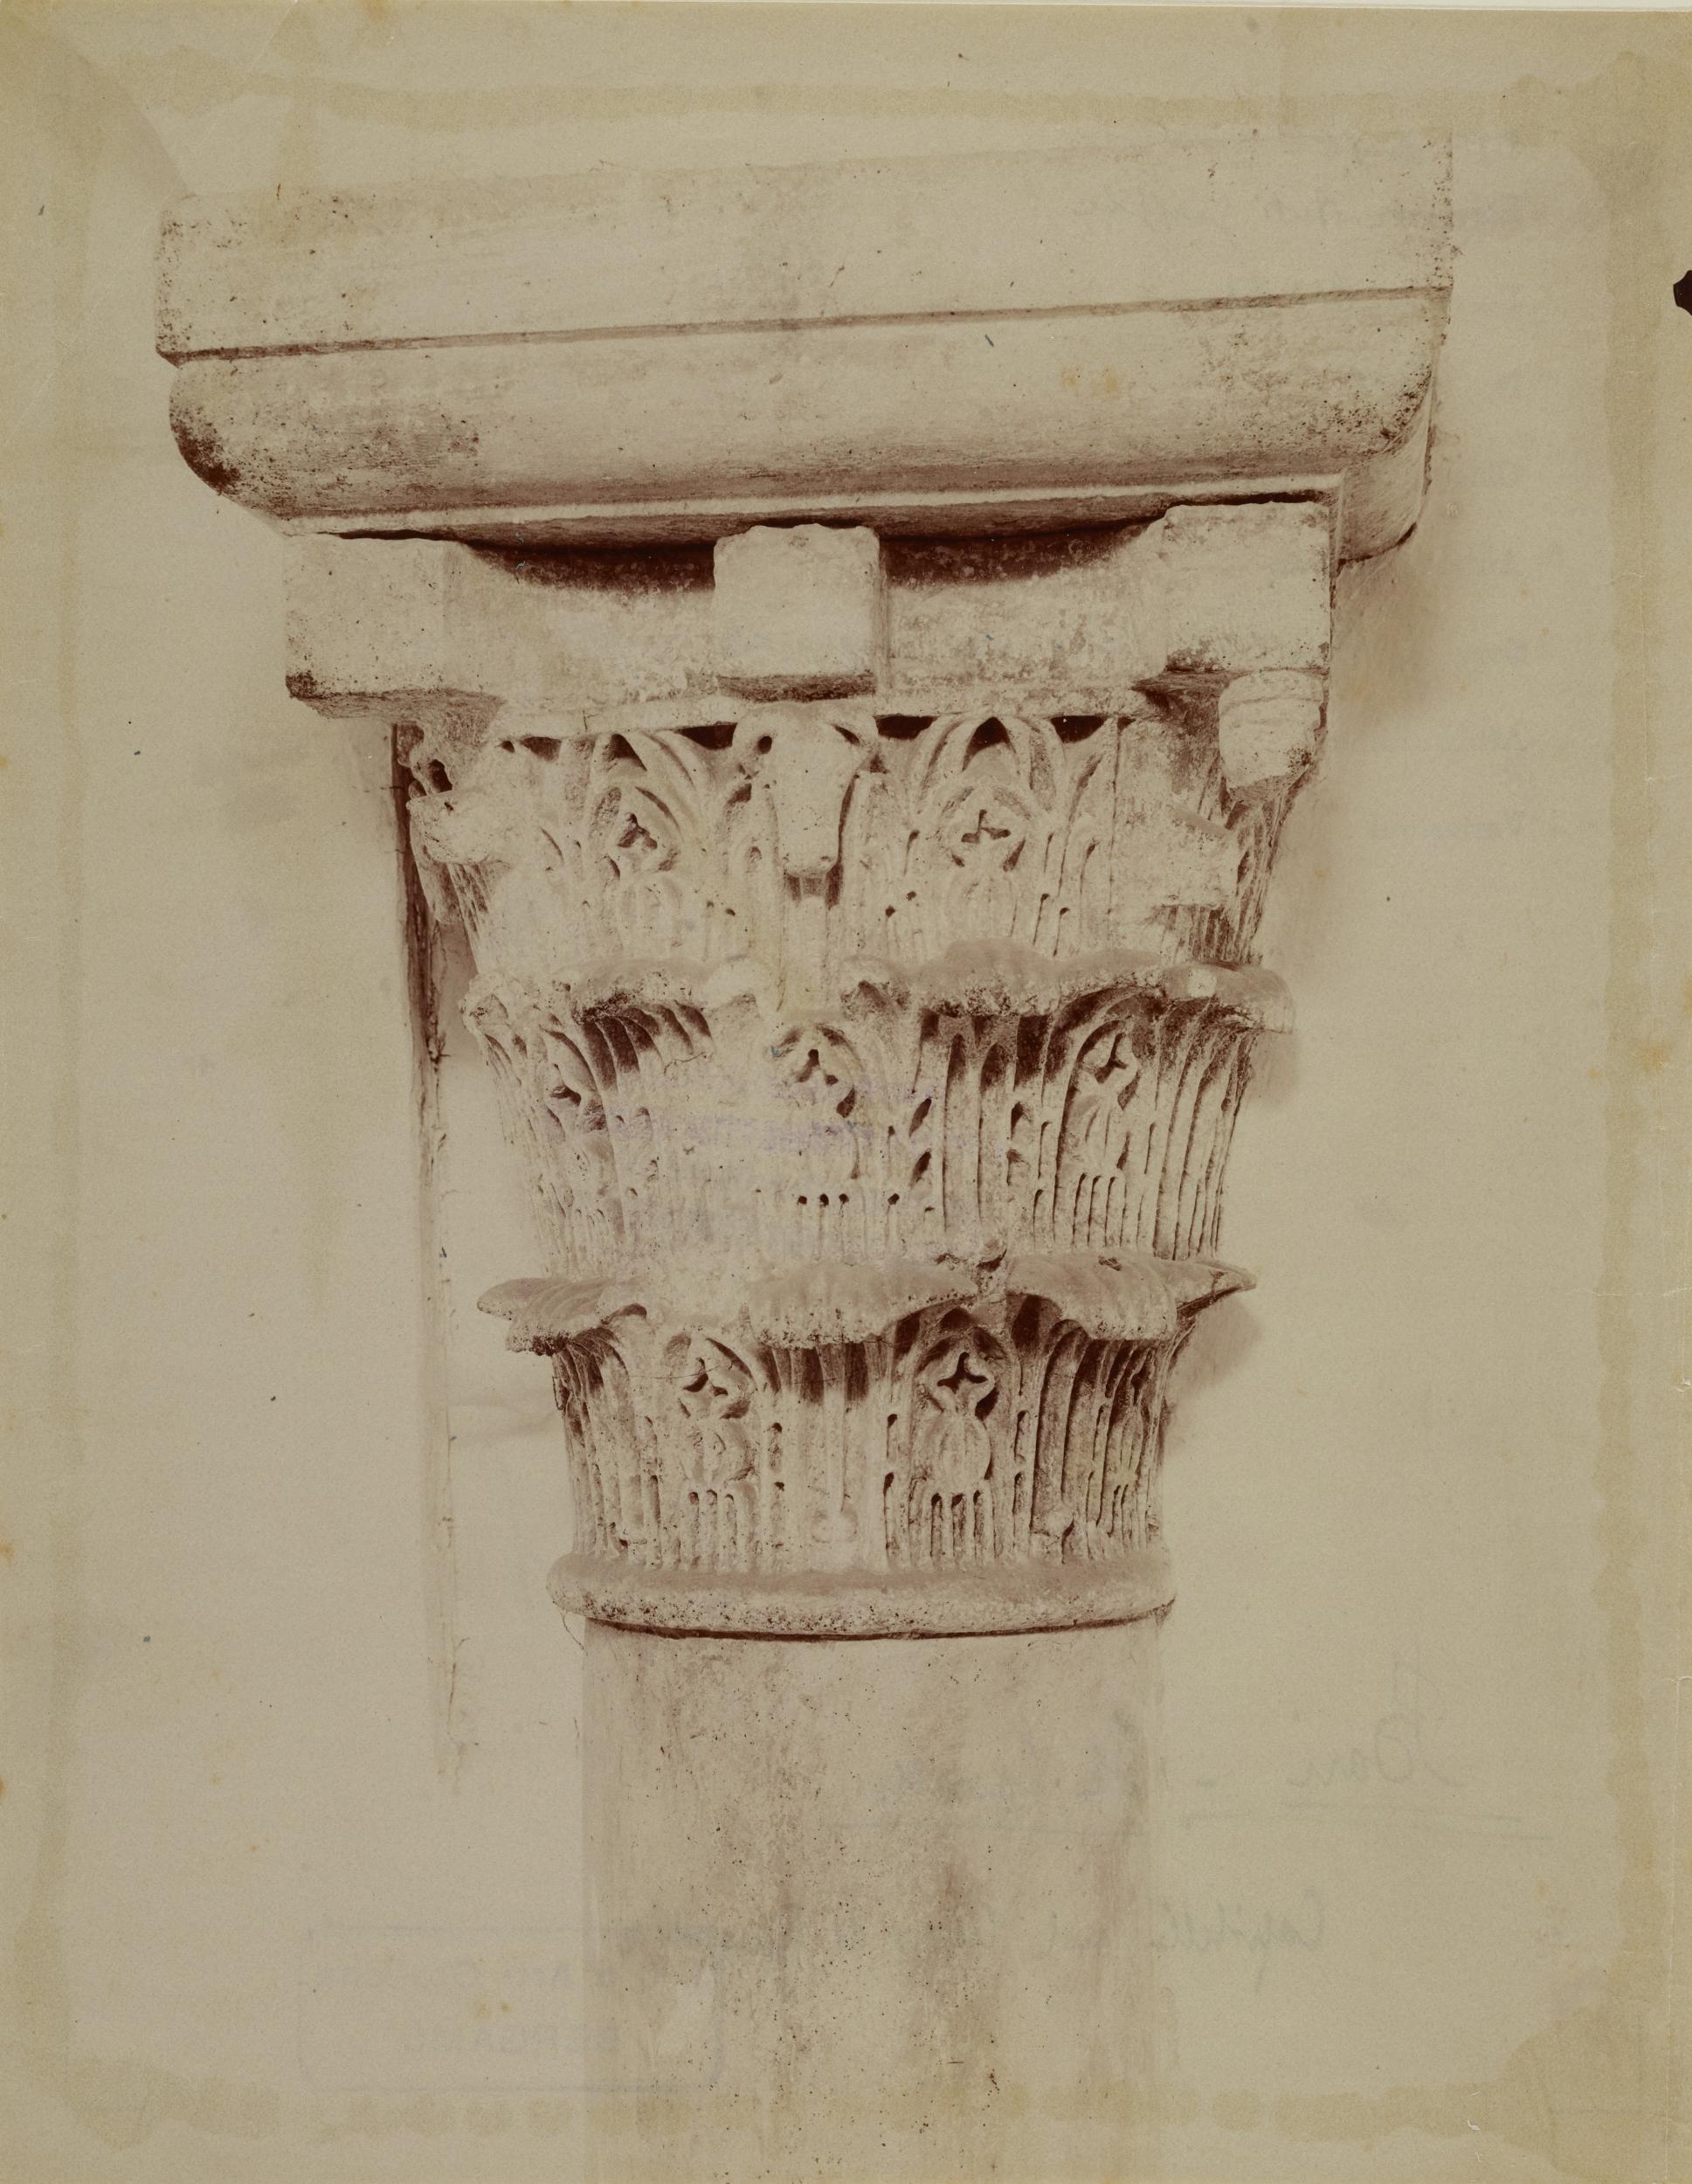 Fotografo non identificato, Bari - Castello Svevo , loggia cortile sud-est, capitello con pulvino, 1876-1900, albumina/carta, MPI136572